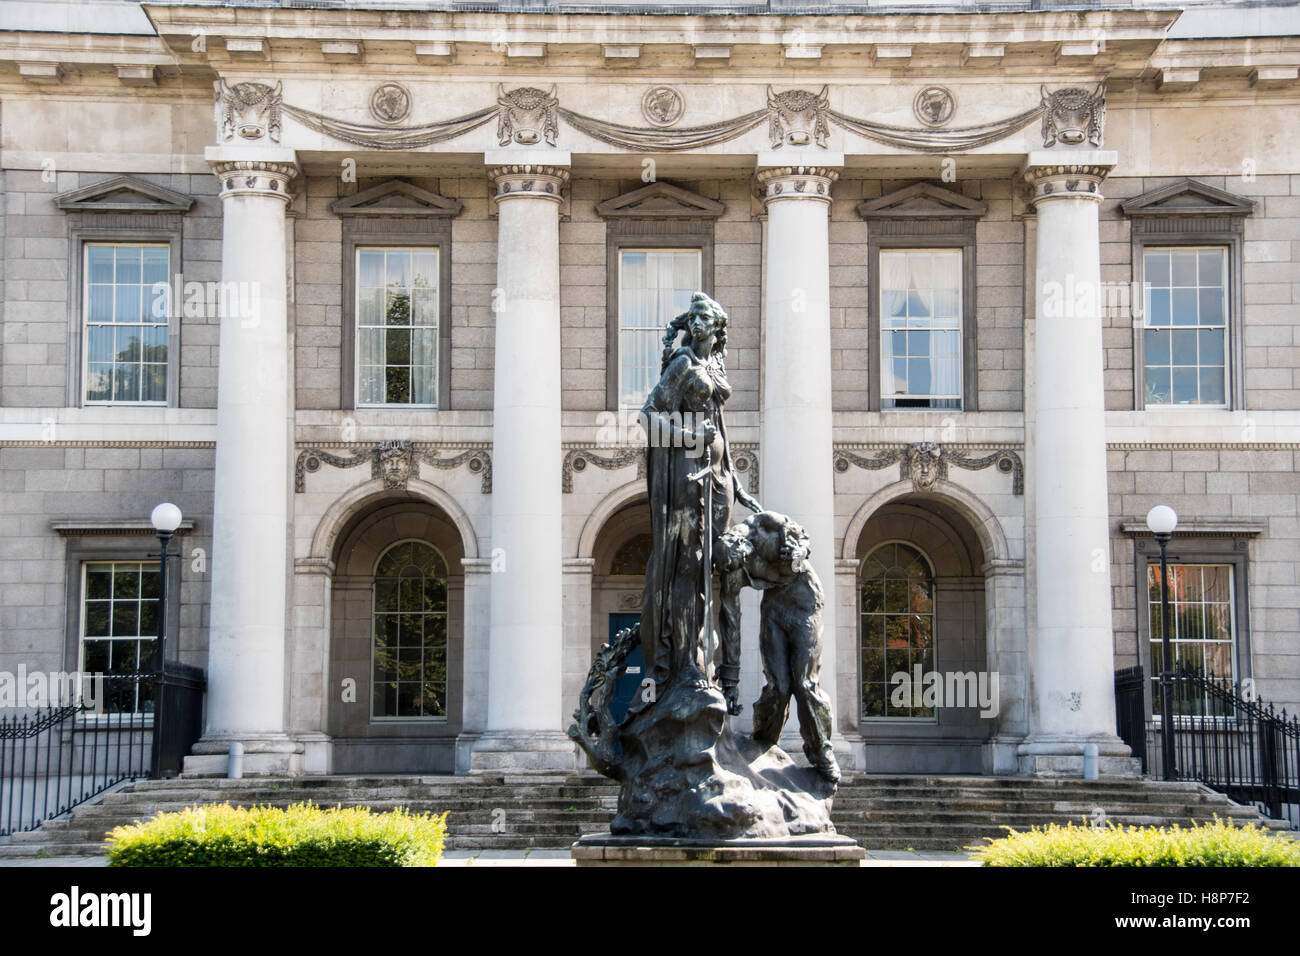 Dublino, Irlanda- scultura al di fuori del Custom House in stile neoclassico edificio del XVIII secolo si trova a Dublino, Irlanda. Foto Stock